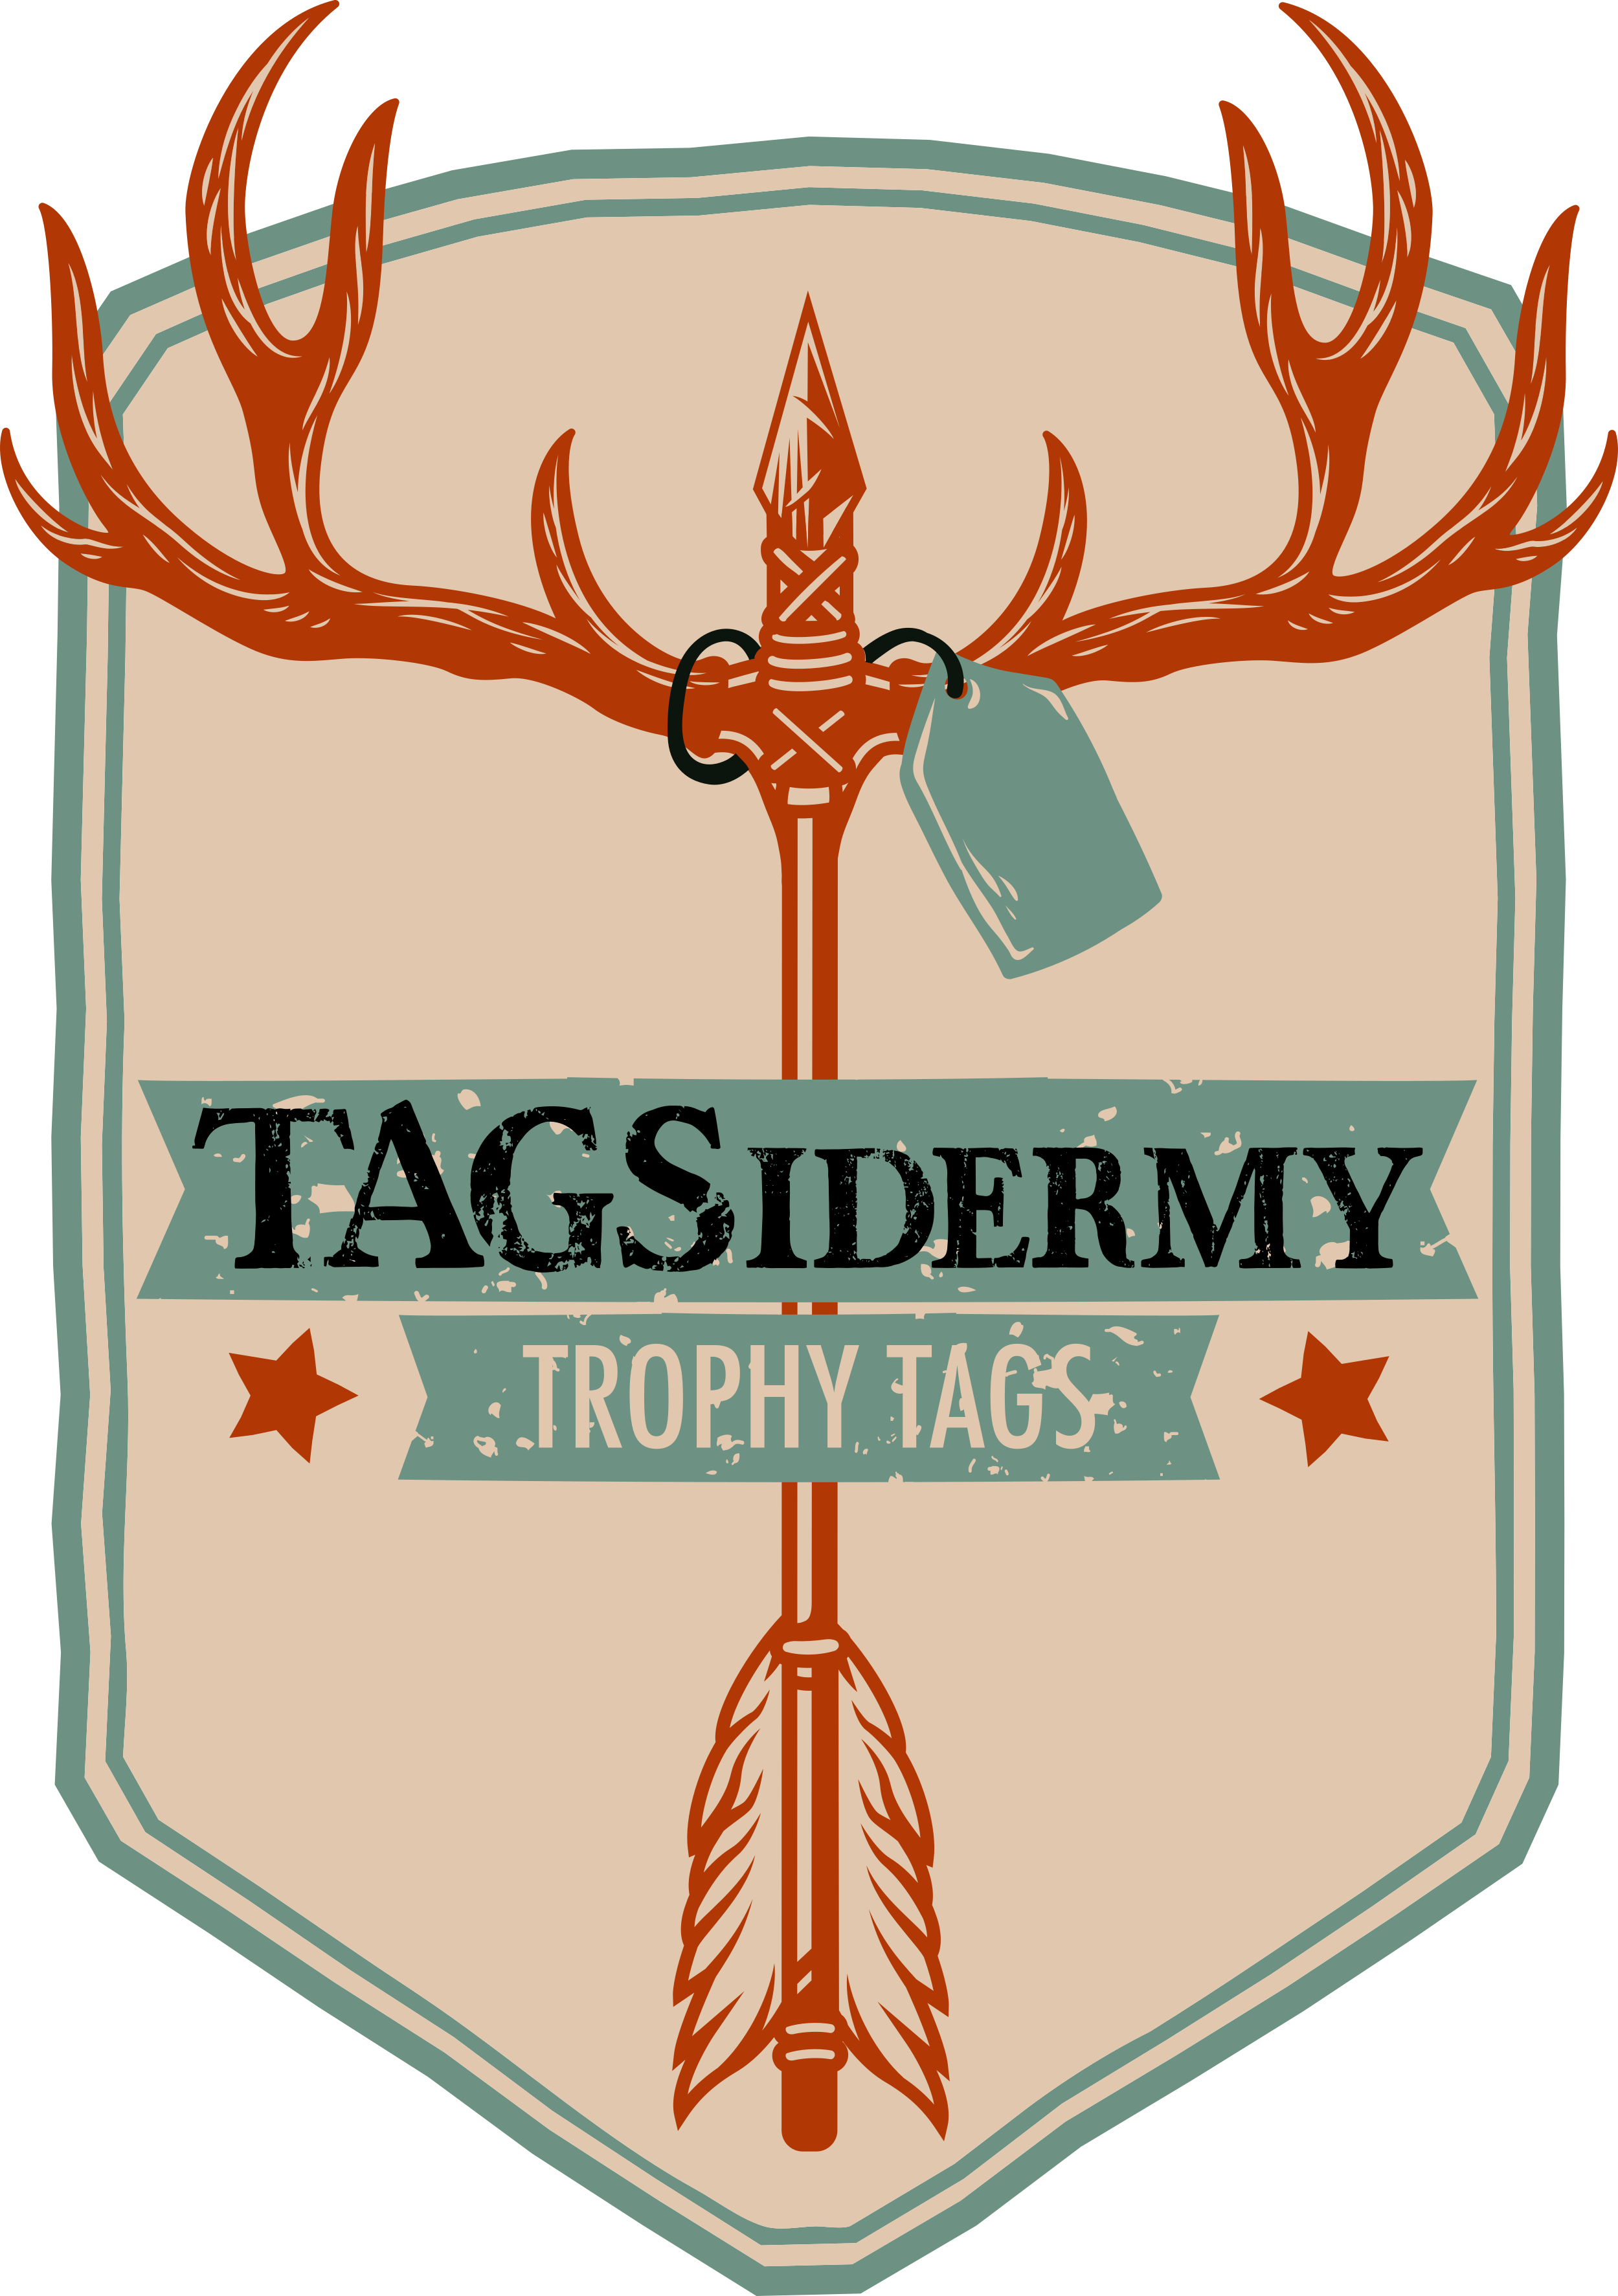 TAGSidermy Trophy Tags Logo